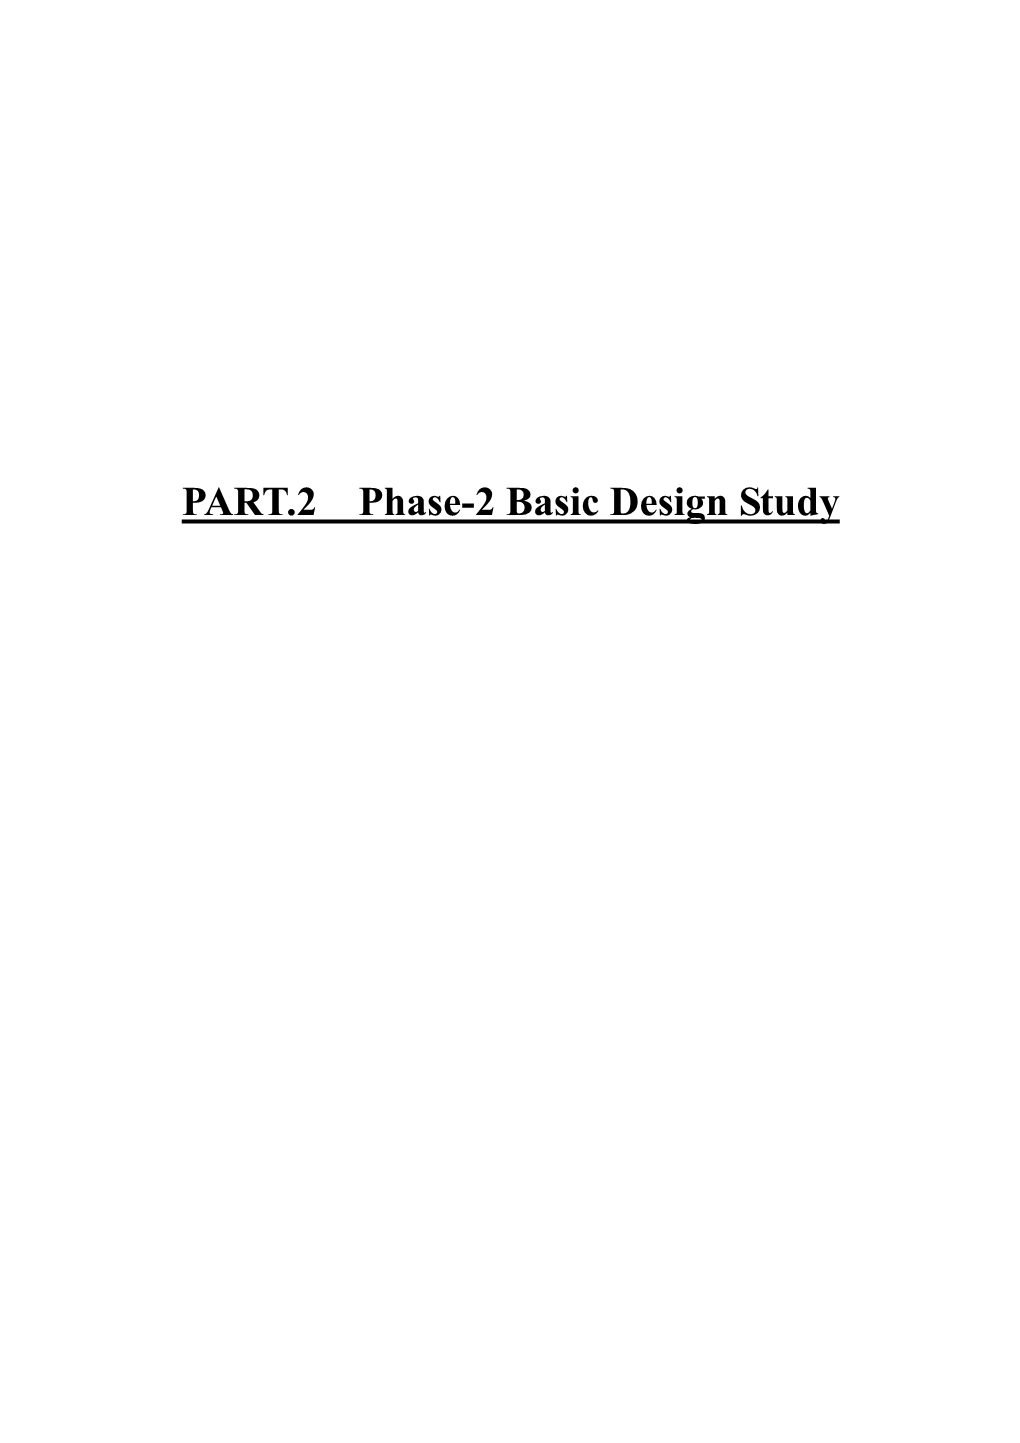 PART.2 Phase-2 Basic Design Study